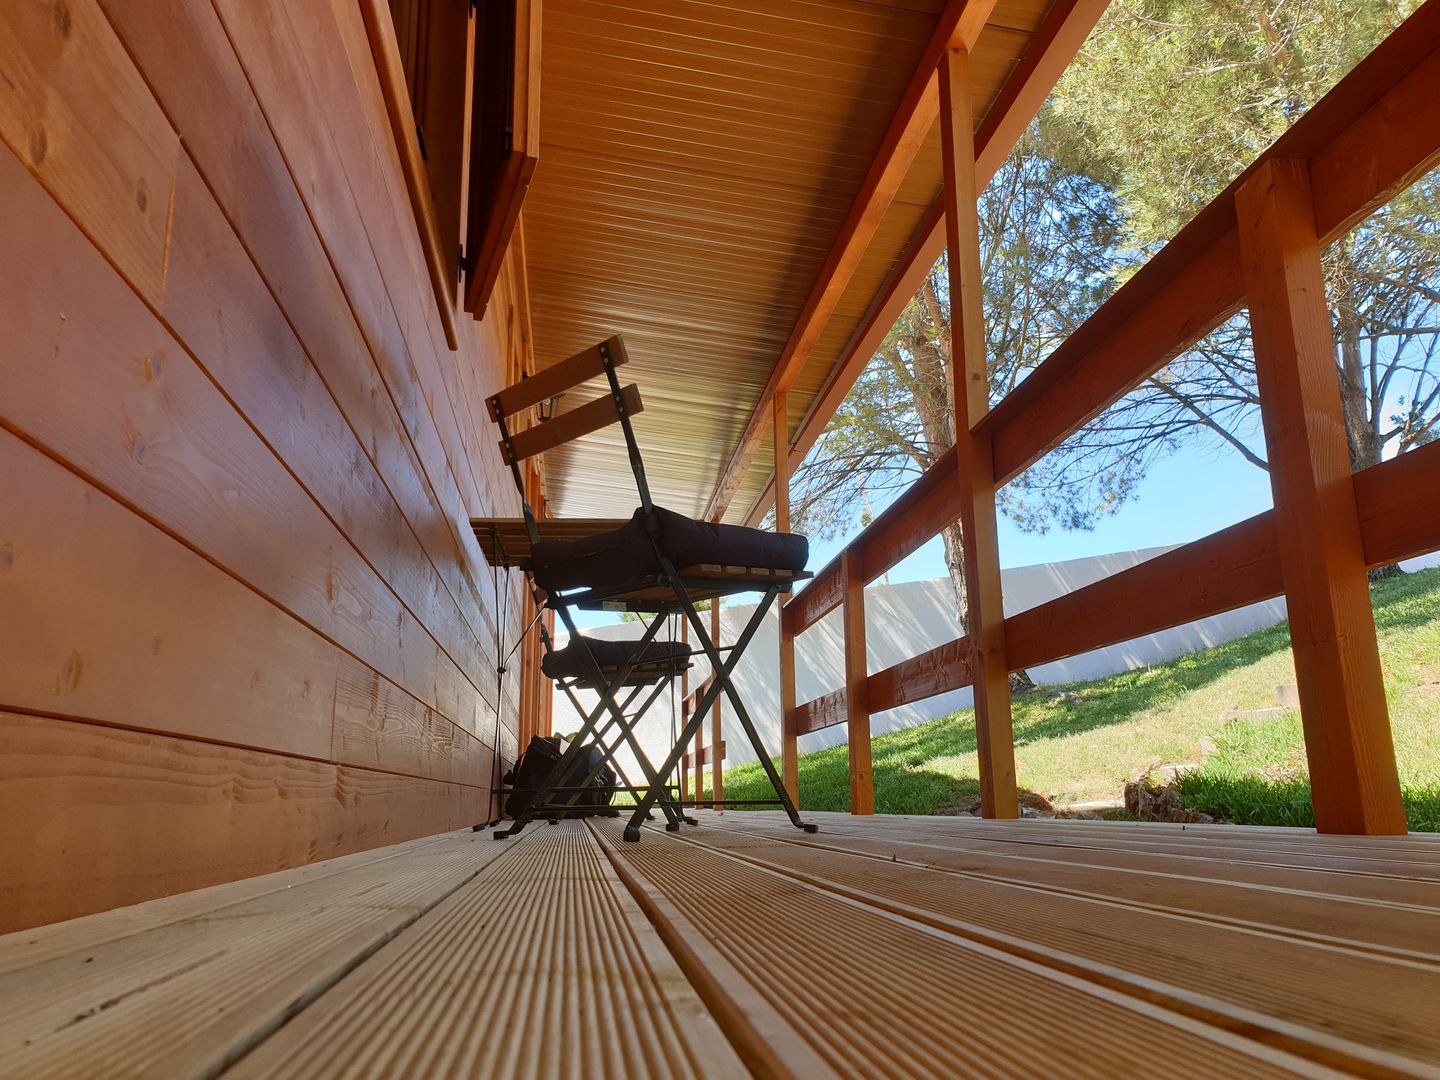 Casa de Madeira por 60.000€, JUPITERHOMES JUPITERHOMES Casas de madera Madera Acabado en madera